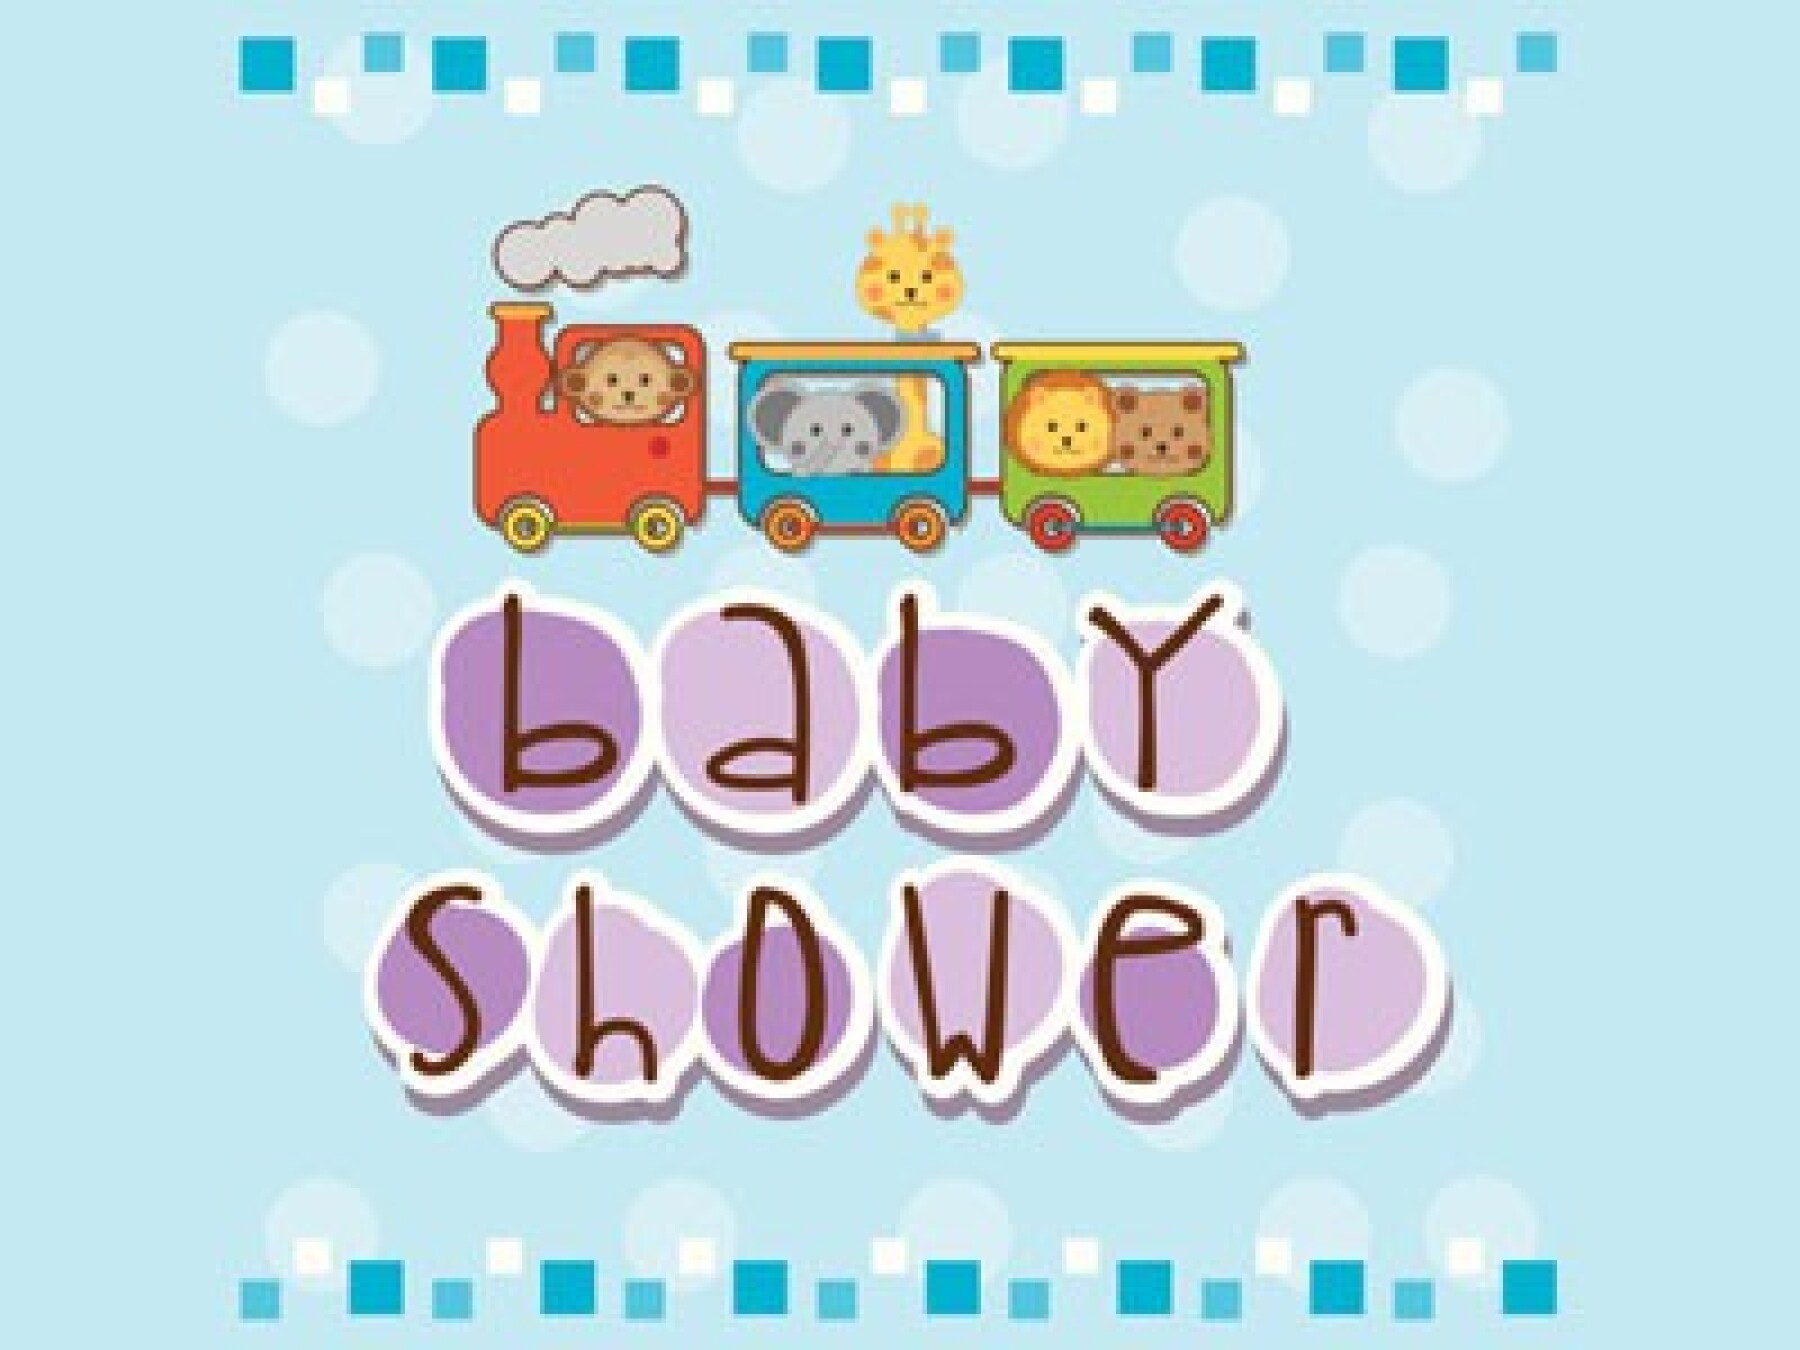 Baby shower : 30 cartes à imprimer